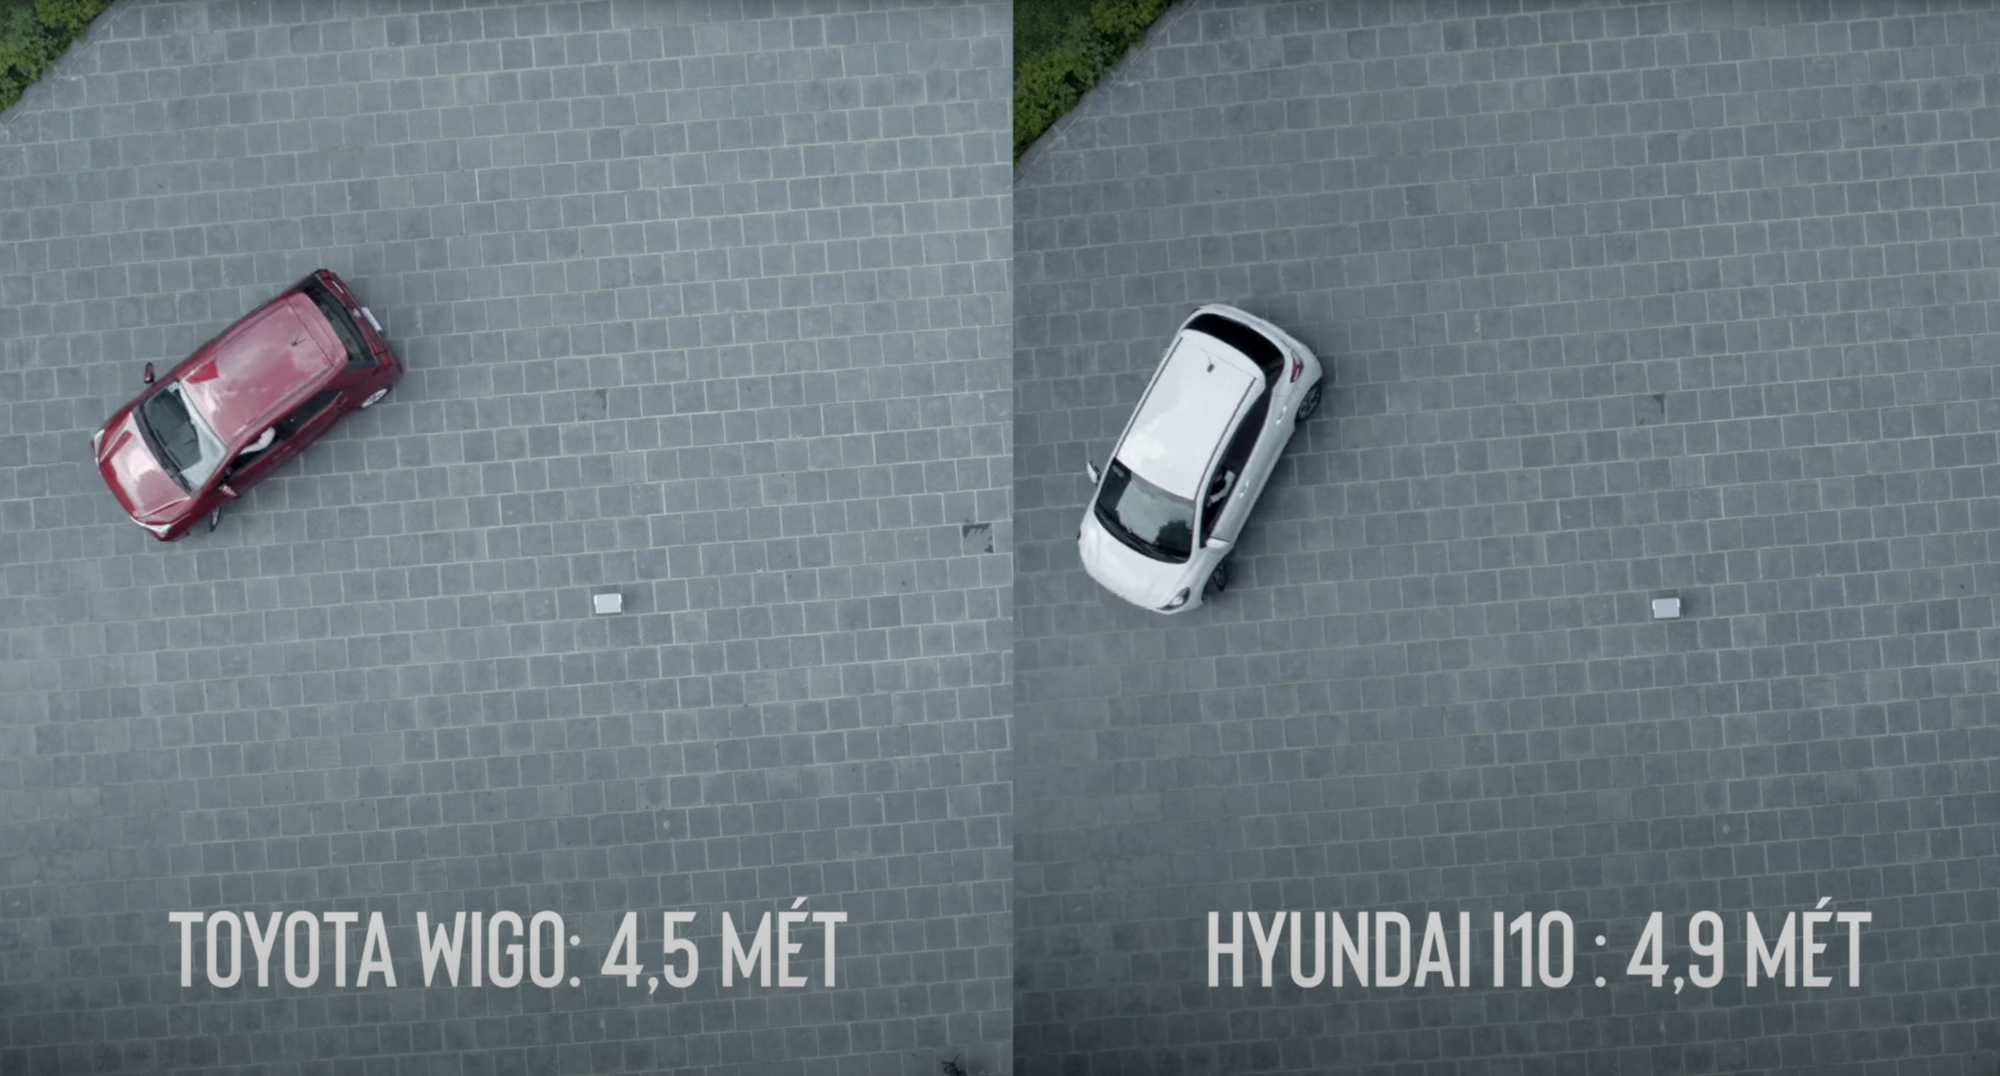 Trải nghiệm Toyota Wigo vs Hyundai i10 để trả lời: Lần đầu mua xe thì chọn mẫu nào? - Ảnh 12.